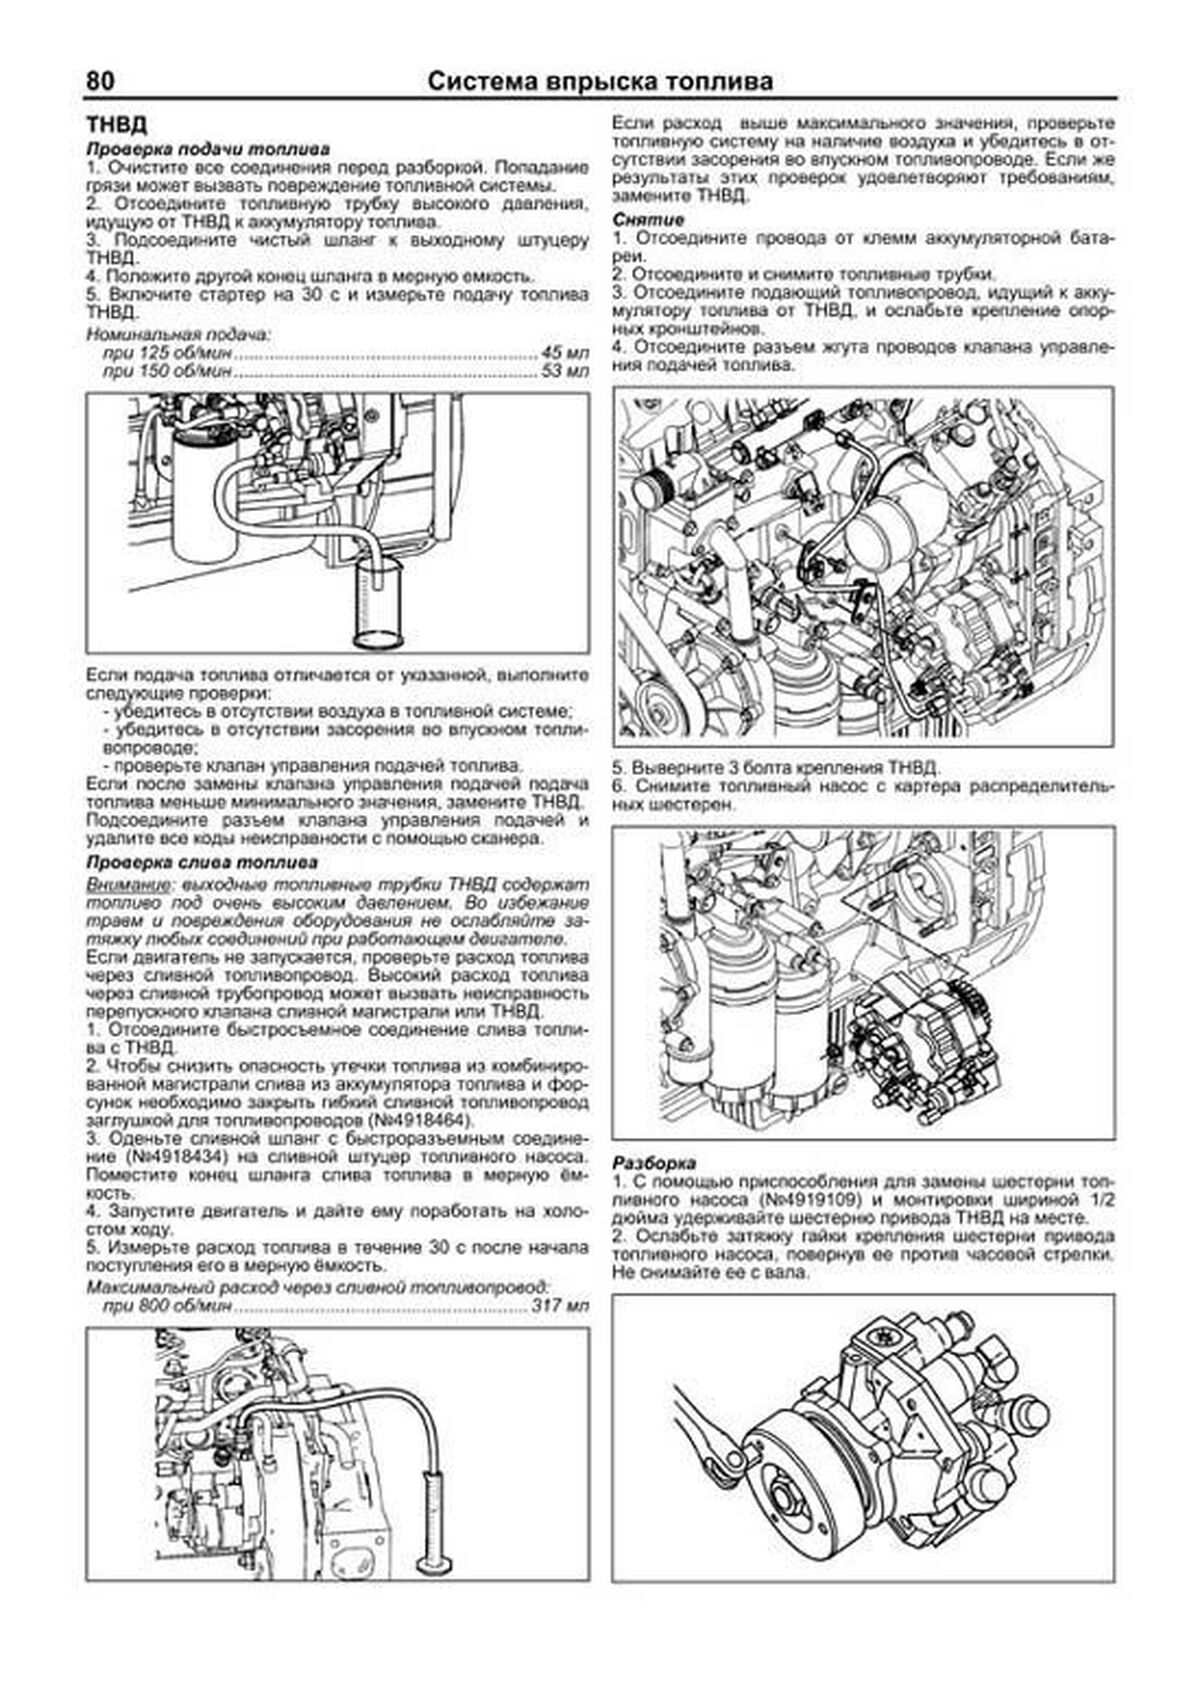 Книга: Двигатели CUMMINS ISF3_8 (д) рем., экспл., то, сер.ПРОФ. | Легион-Aвтодата